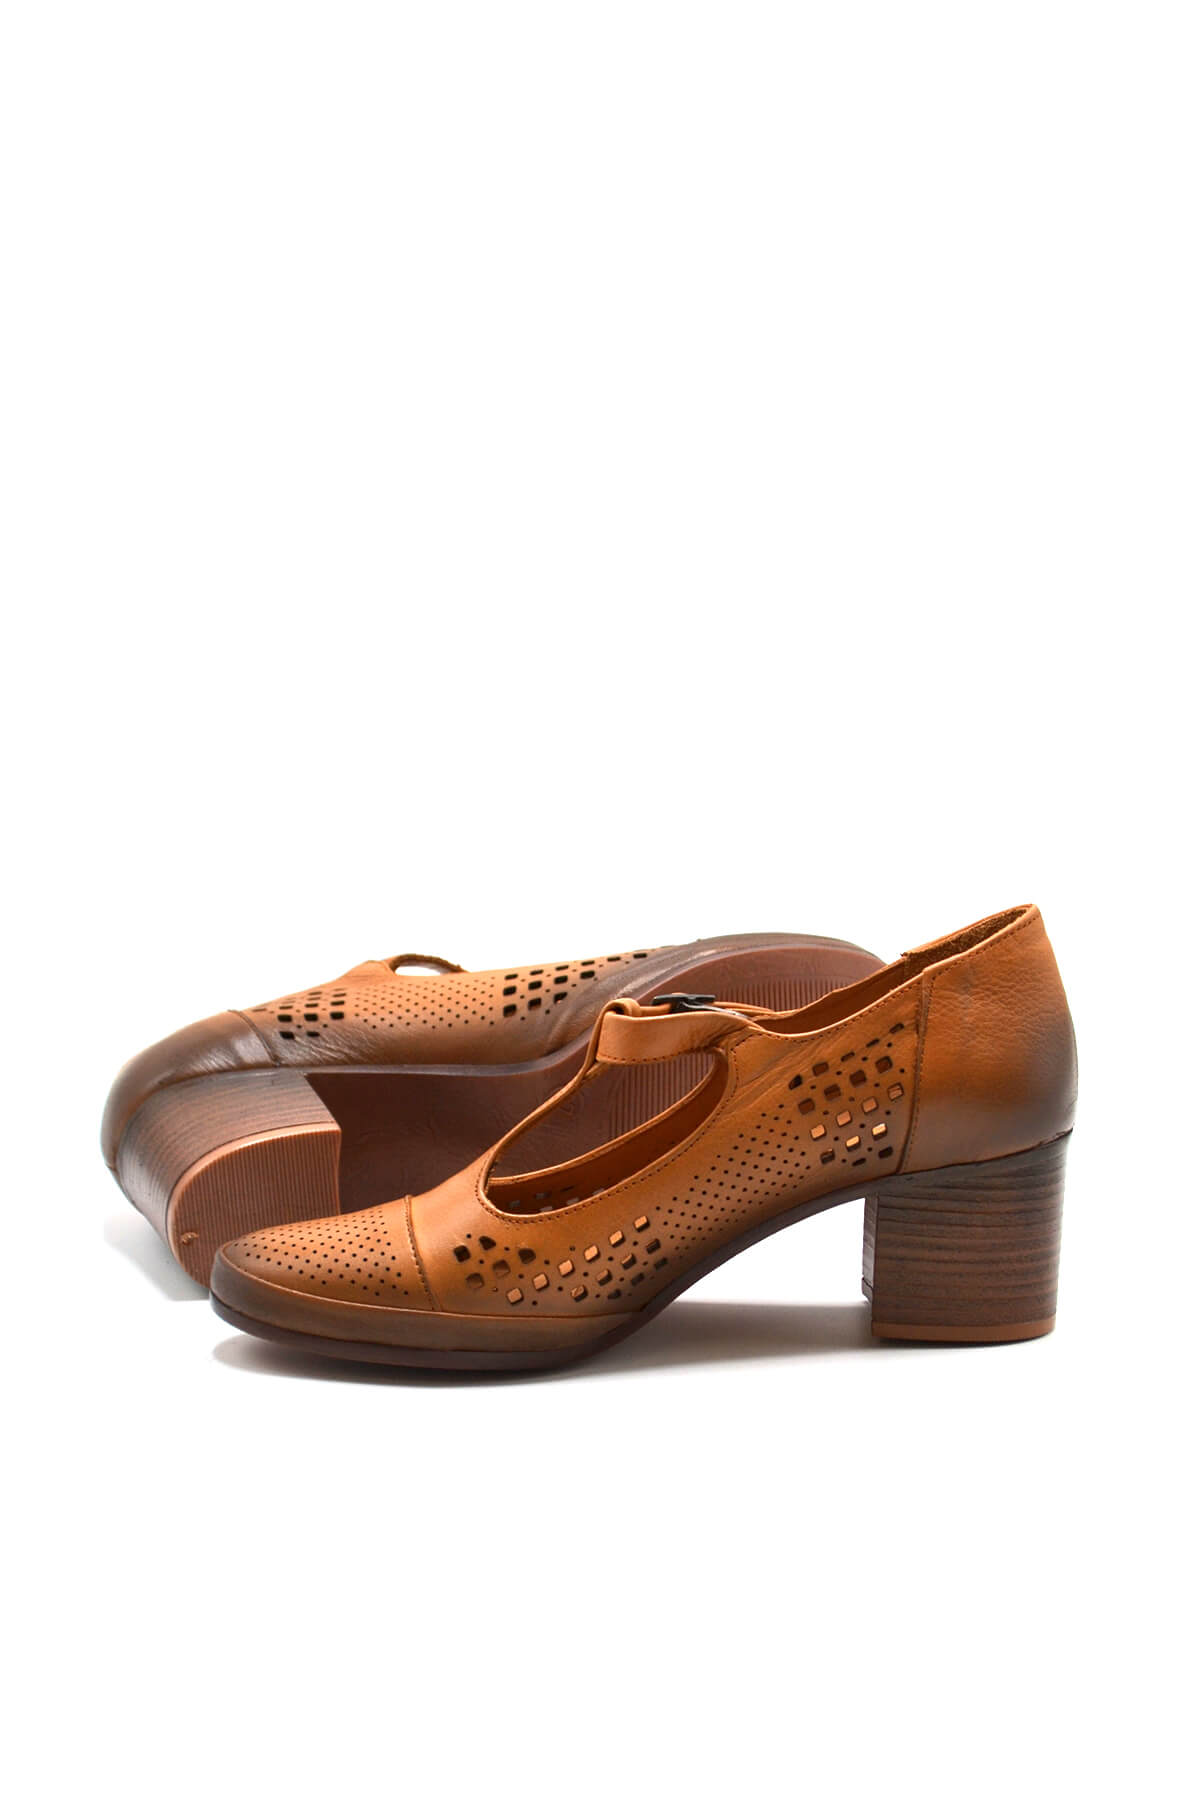 Kadın Yazlık Topuklu Deri Ayakkabı Taba 1911923Y - Thumbnail